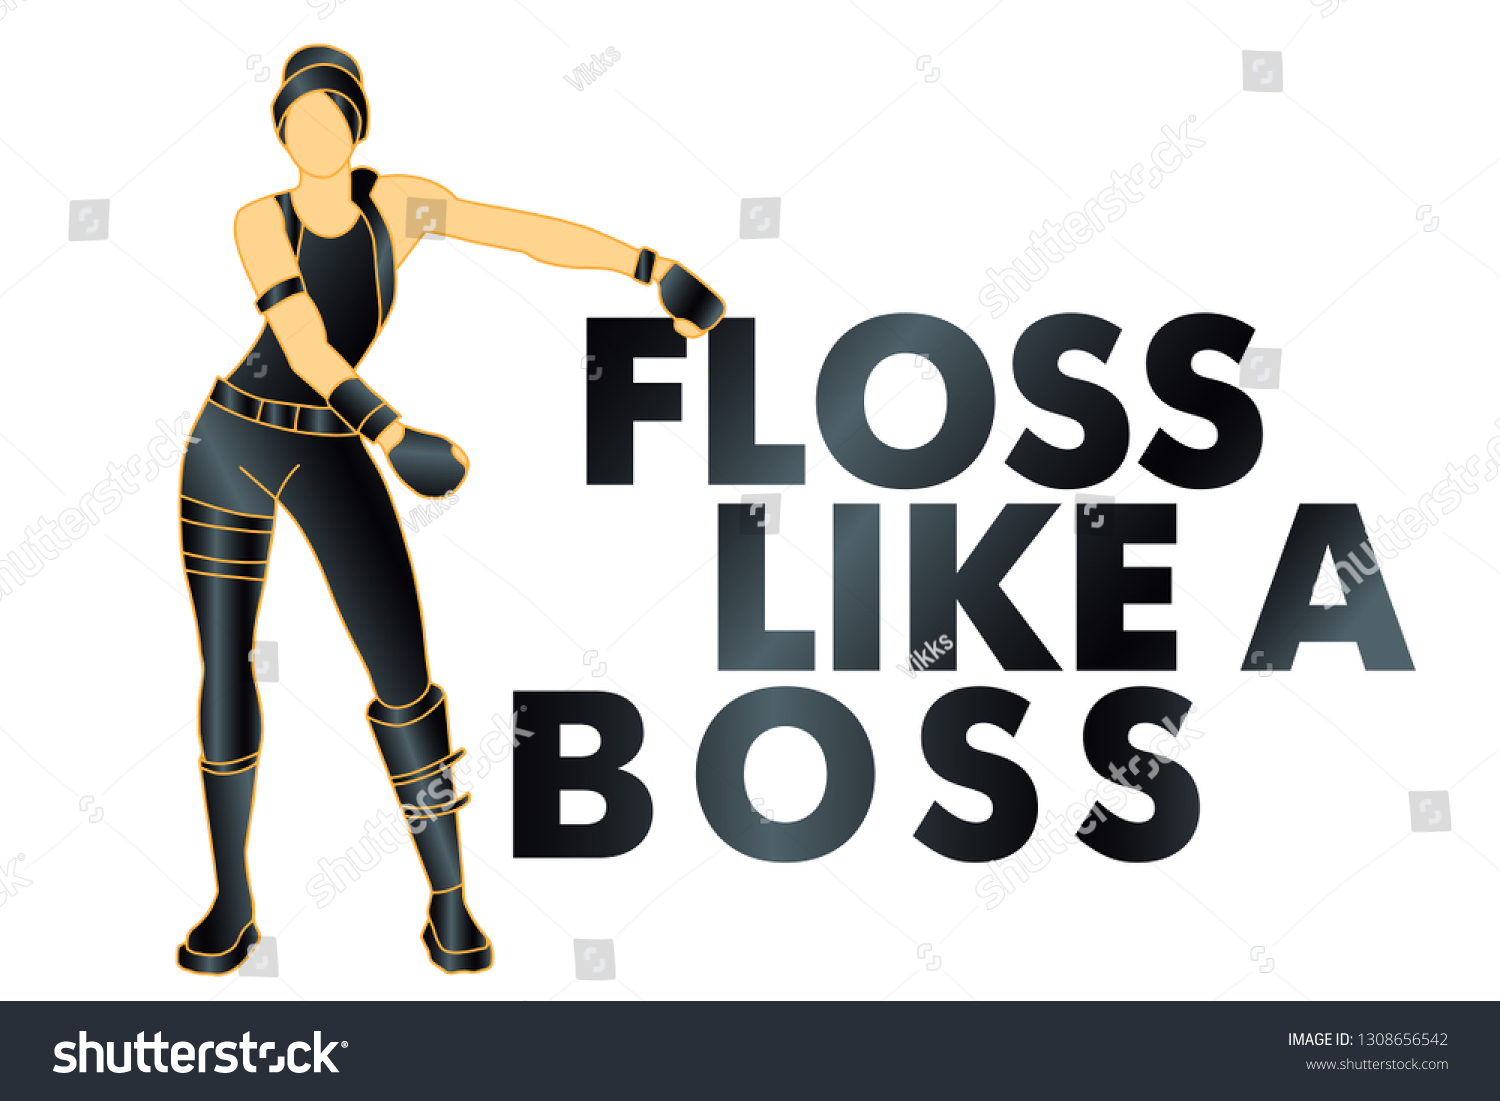 floss like a boss fortnite shirt